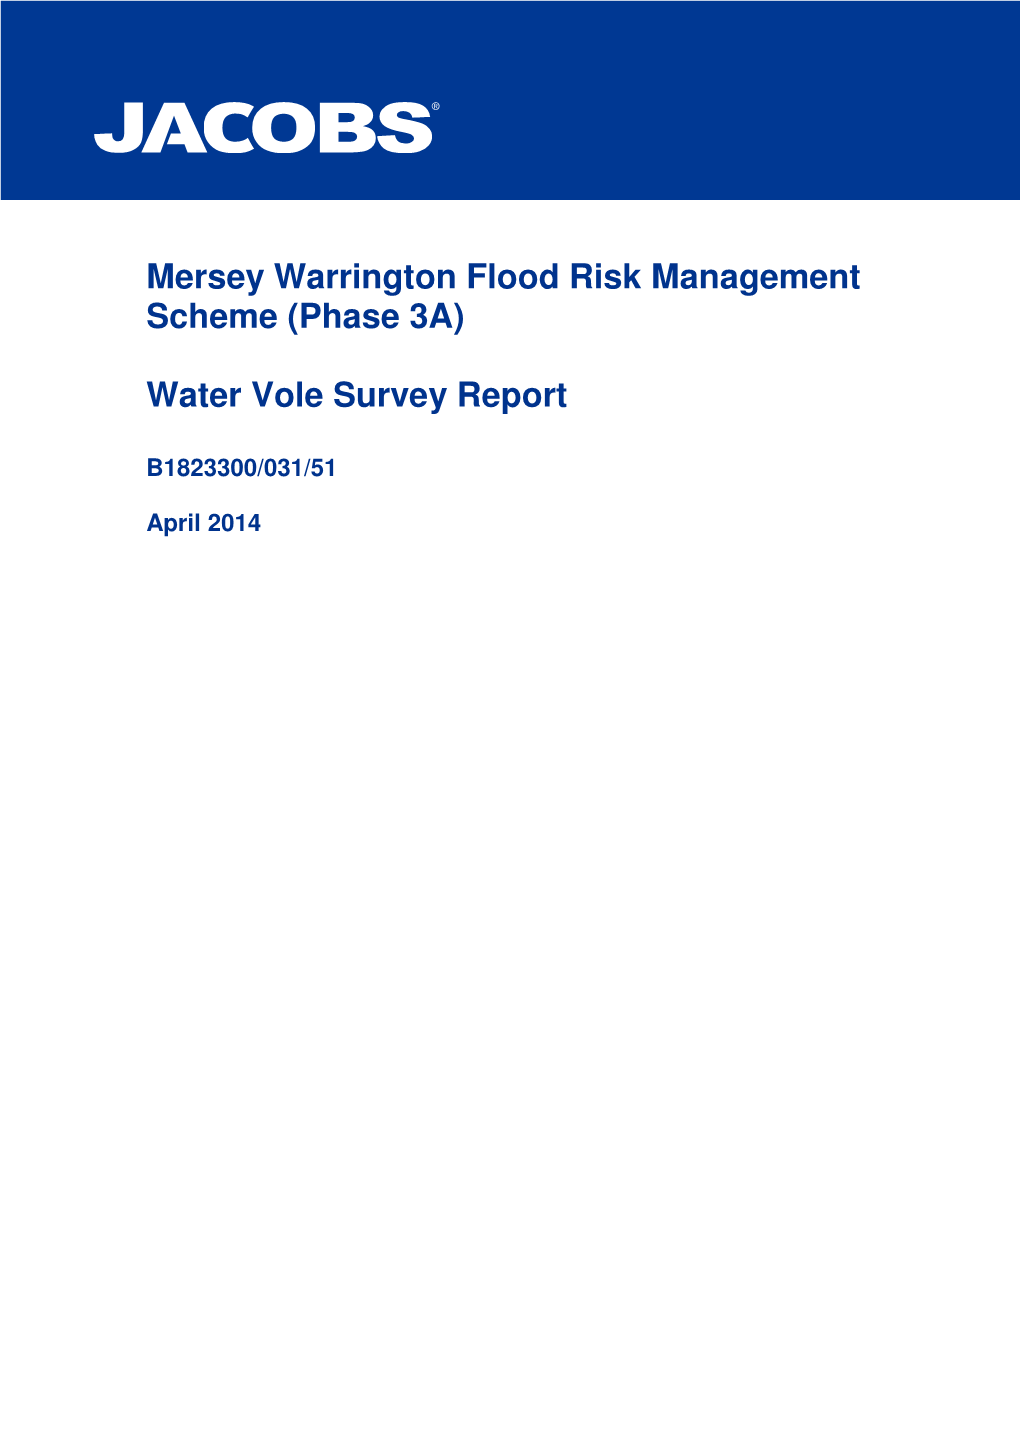 Mersey Warrington Flood Risk Management Scheme (Phase 3A)